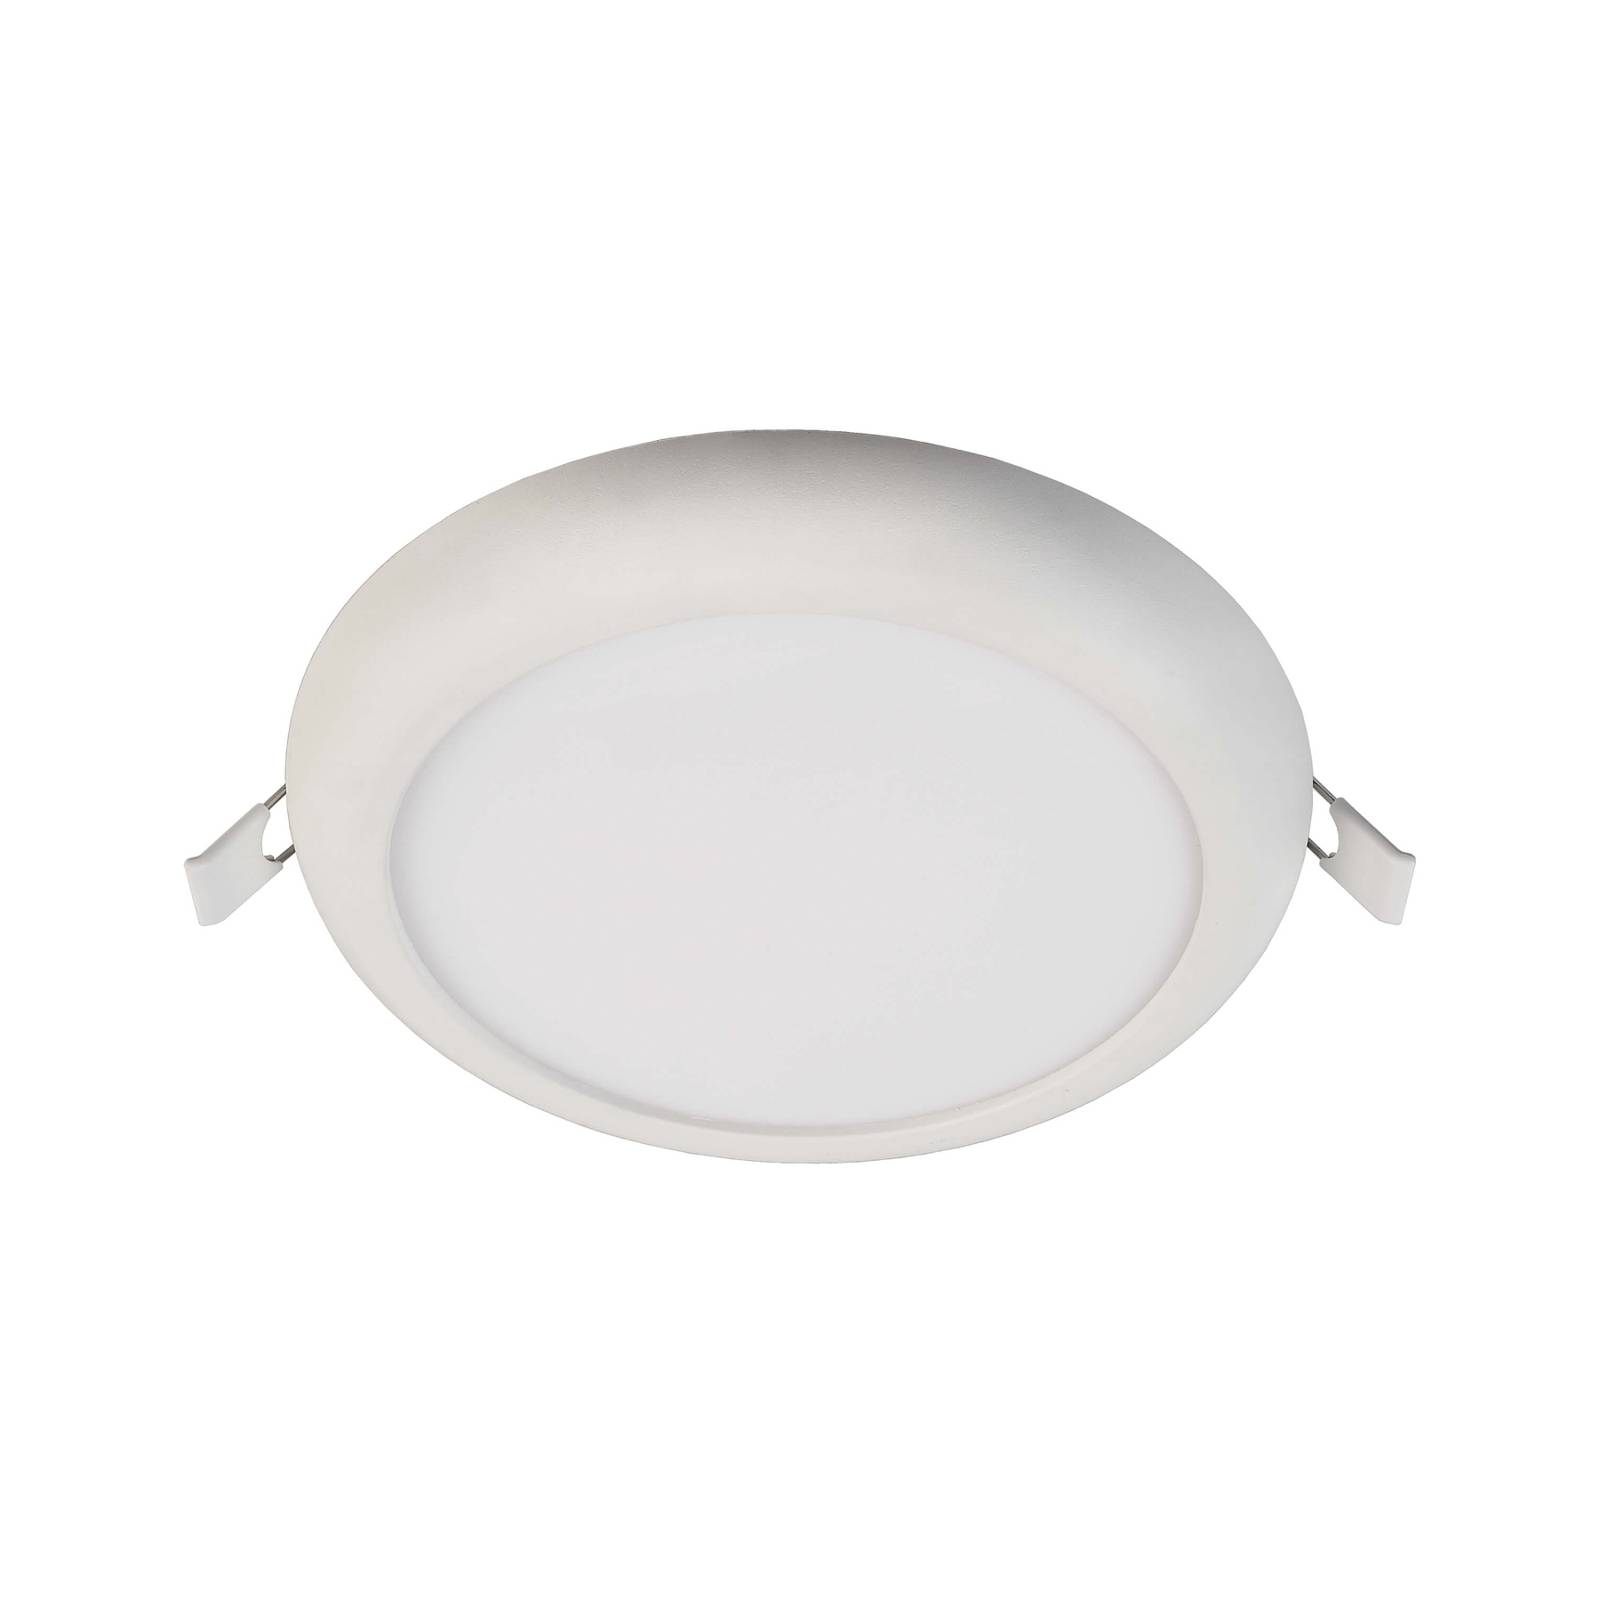 Deko-Light LED-Deckeneinbauleuchte Zaurak, weiß, rund Ø 18 cm